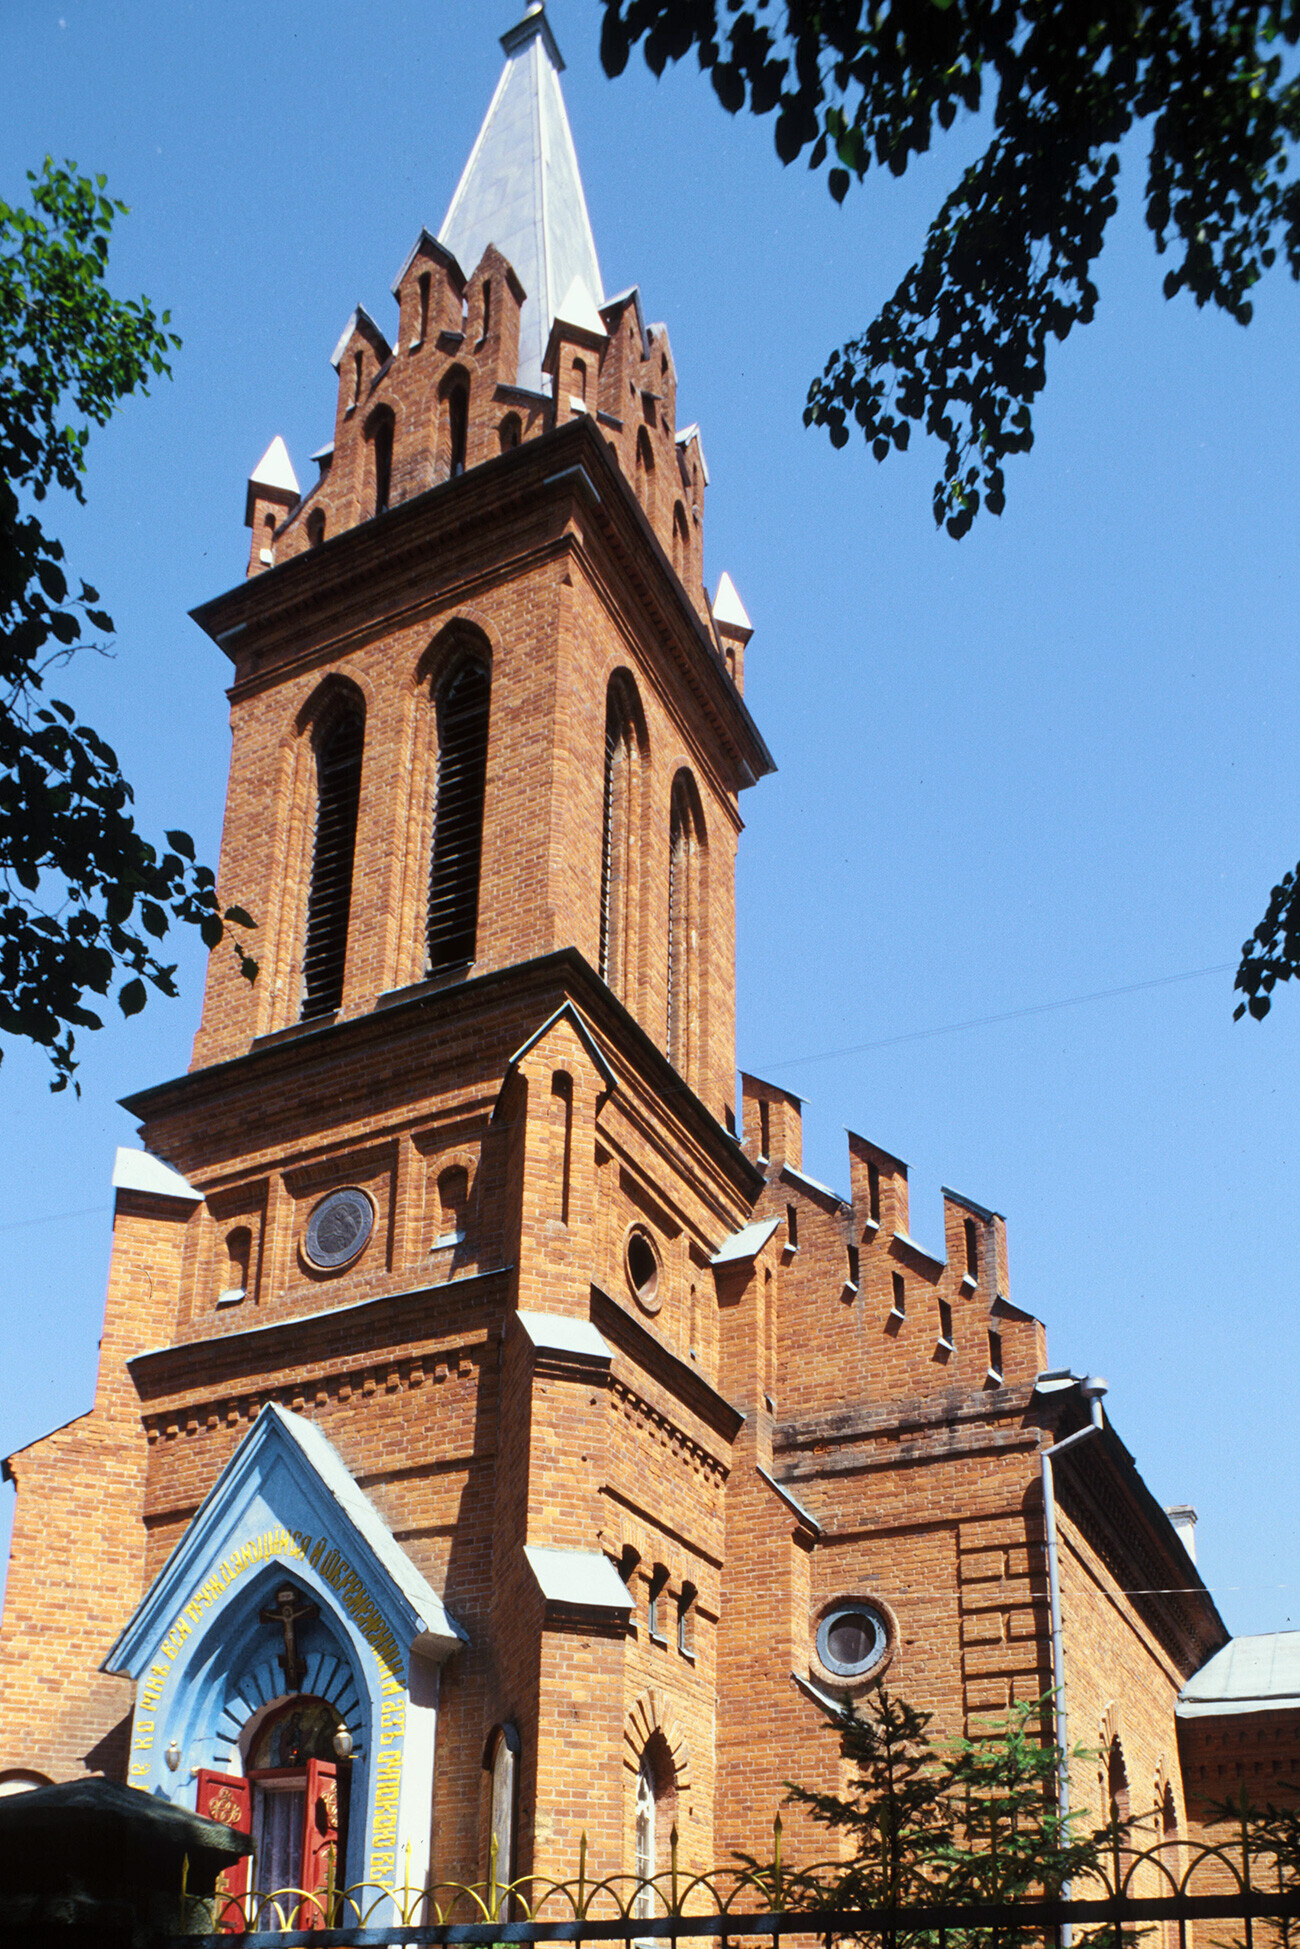 Ancienne église catholique de l’Annonciation construite en 1896. Le clocher a été ajouté en 1911. La paroisse a été fermée au culte en 1923. Transféré à l’Eglise orthodoxe dans les années 1940, le bâtiment est devenu cathédrale de l’Annonciation. Actuellement, c’est l’église de l’Archange Gabriel